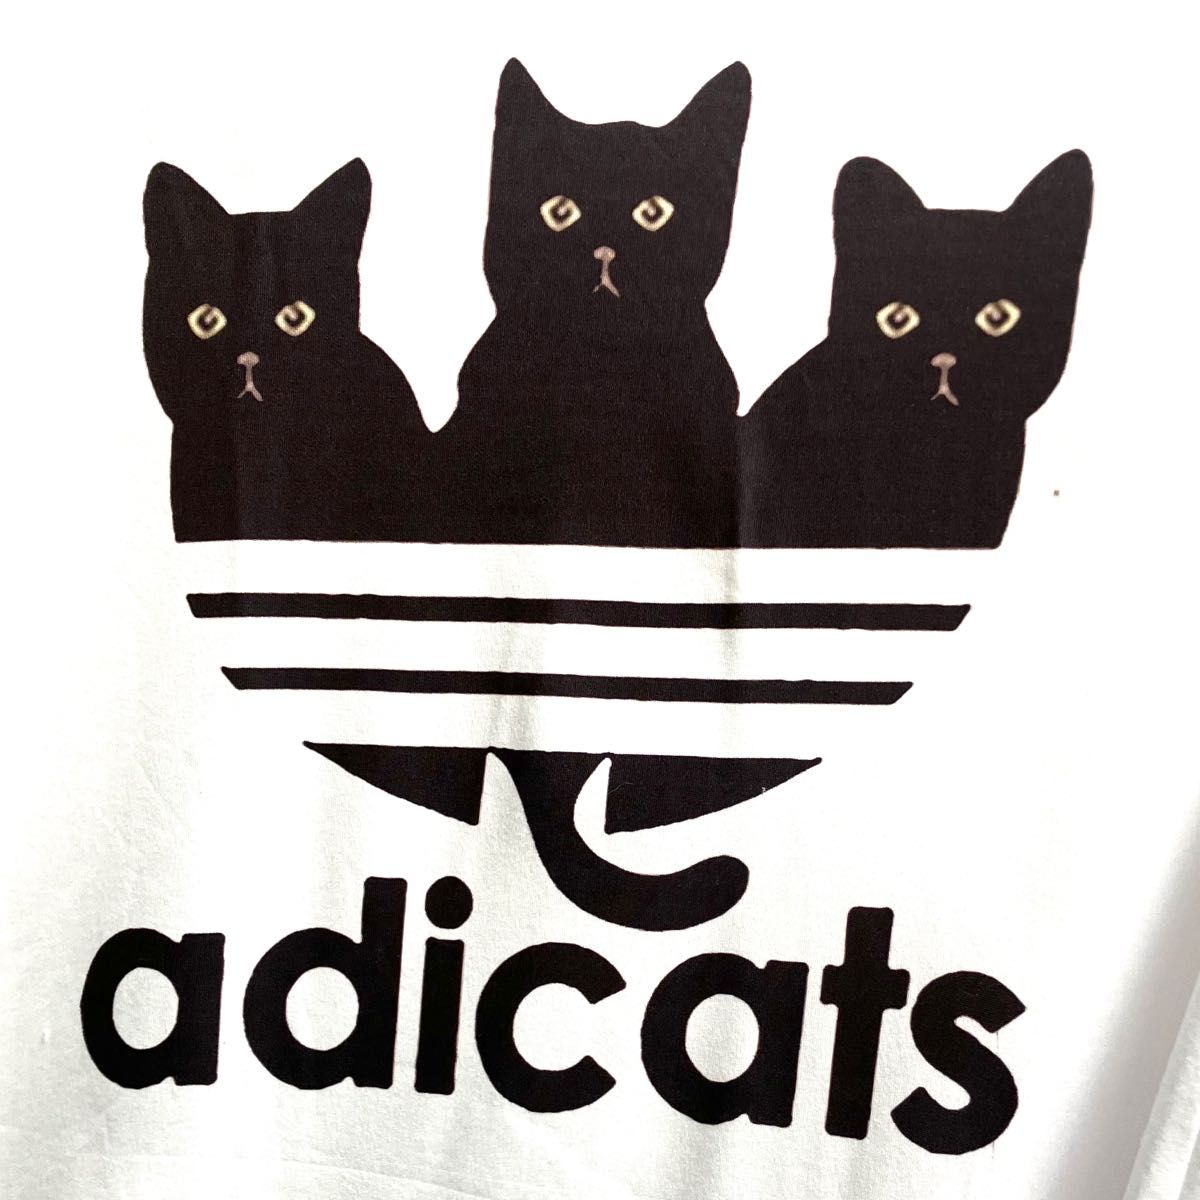 ホワイト M 黒猫 Tシャツ オモシロ ユニセックス ネタ ネコ パロディ 白 猫グッズ プレゼント ギフト お土産 可愛い 新品